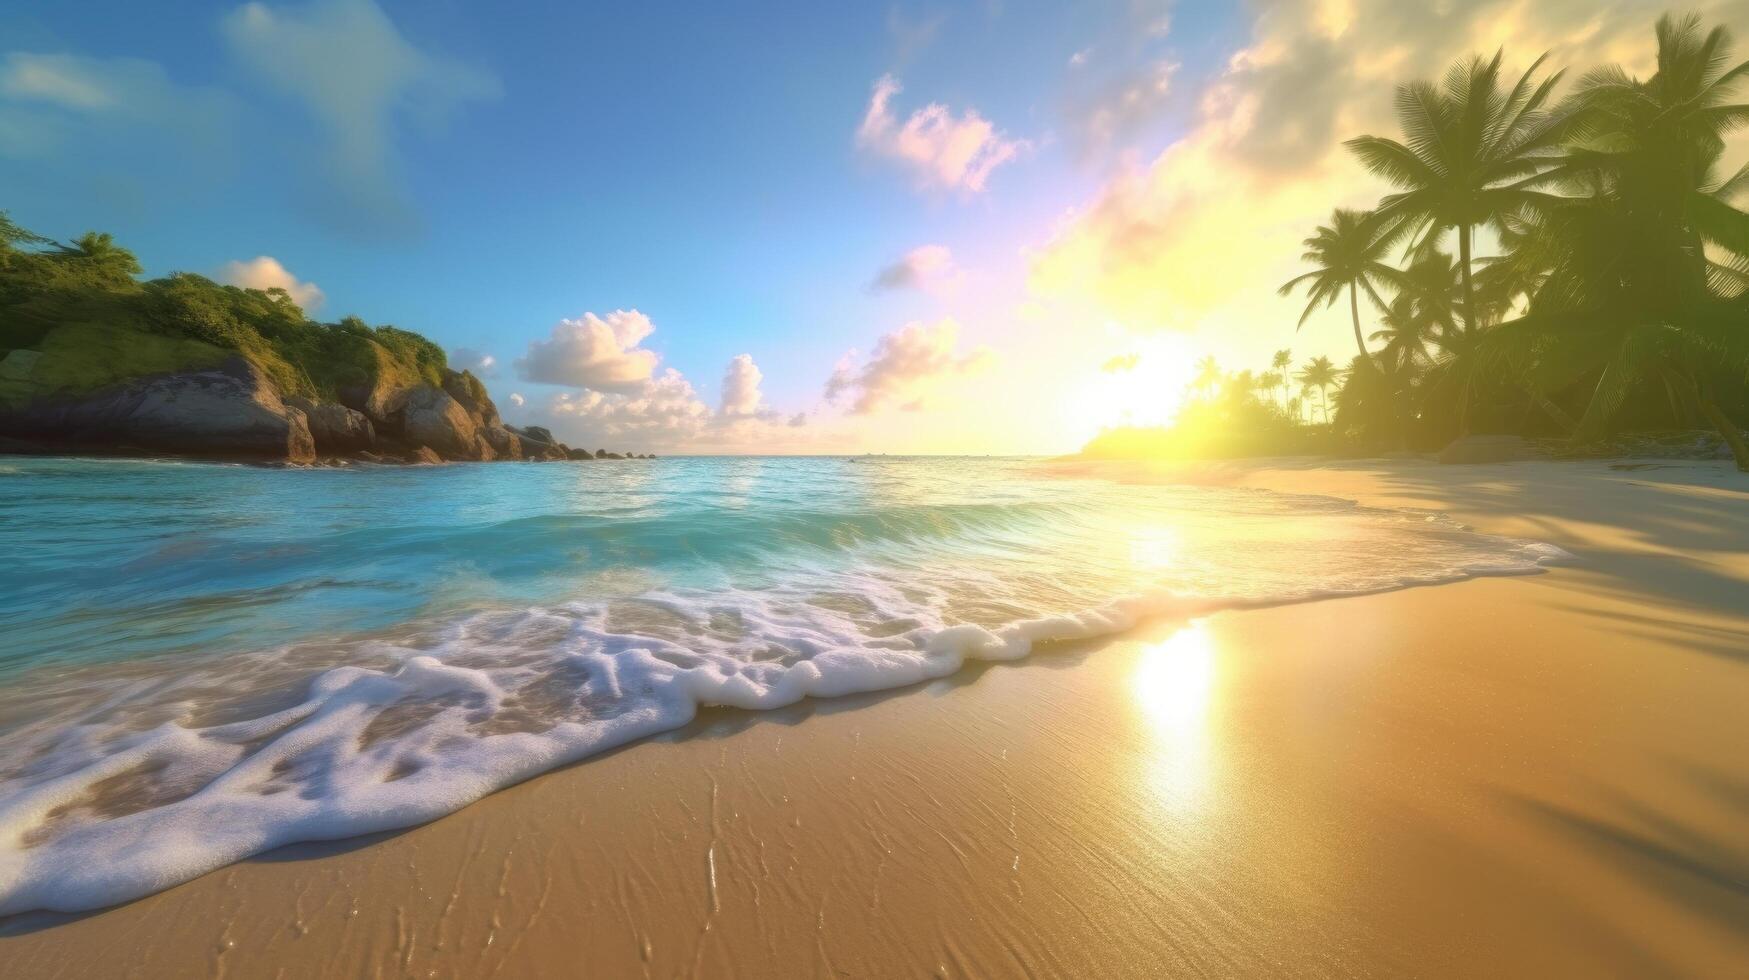 Tropical island background. Illustration photo